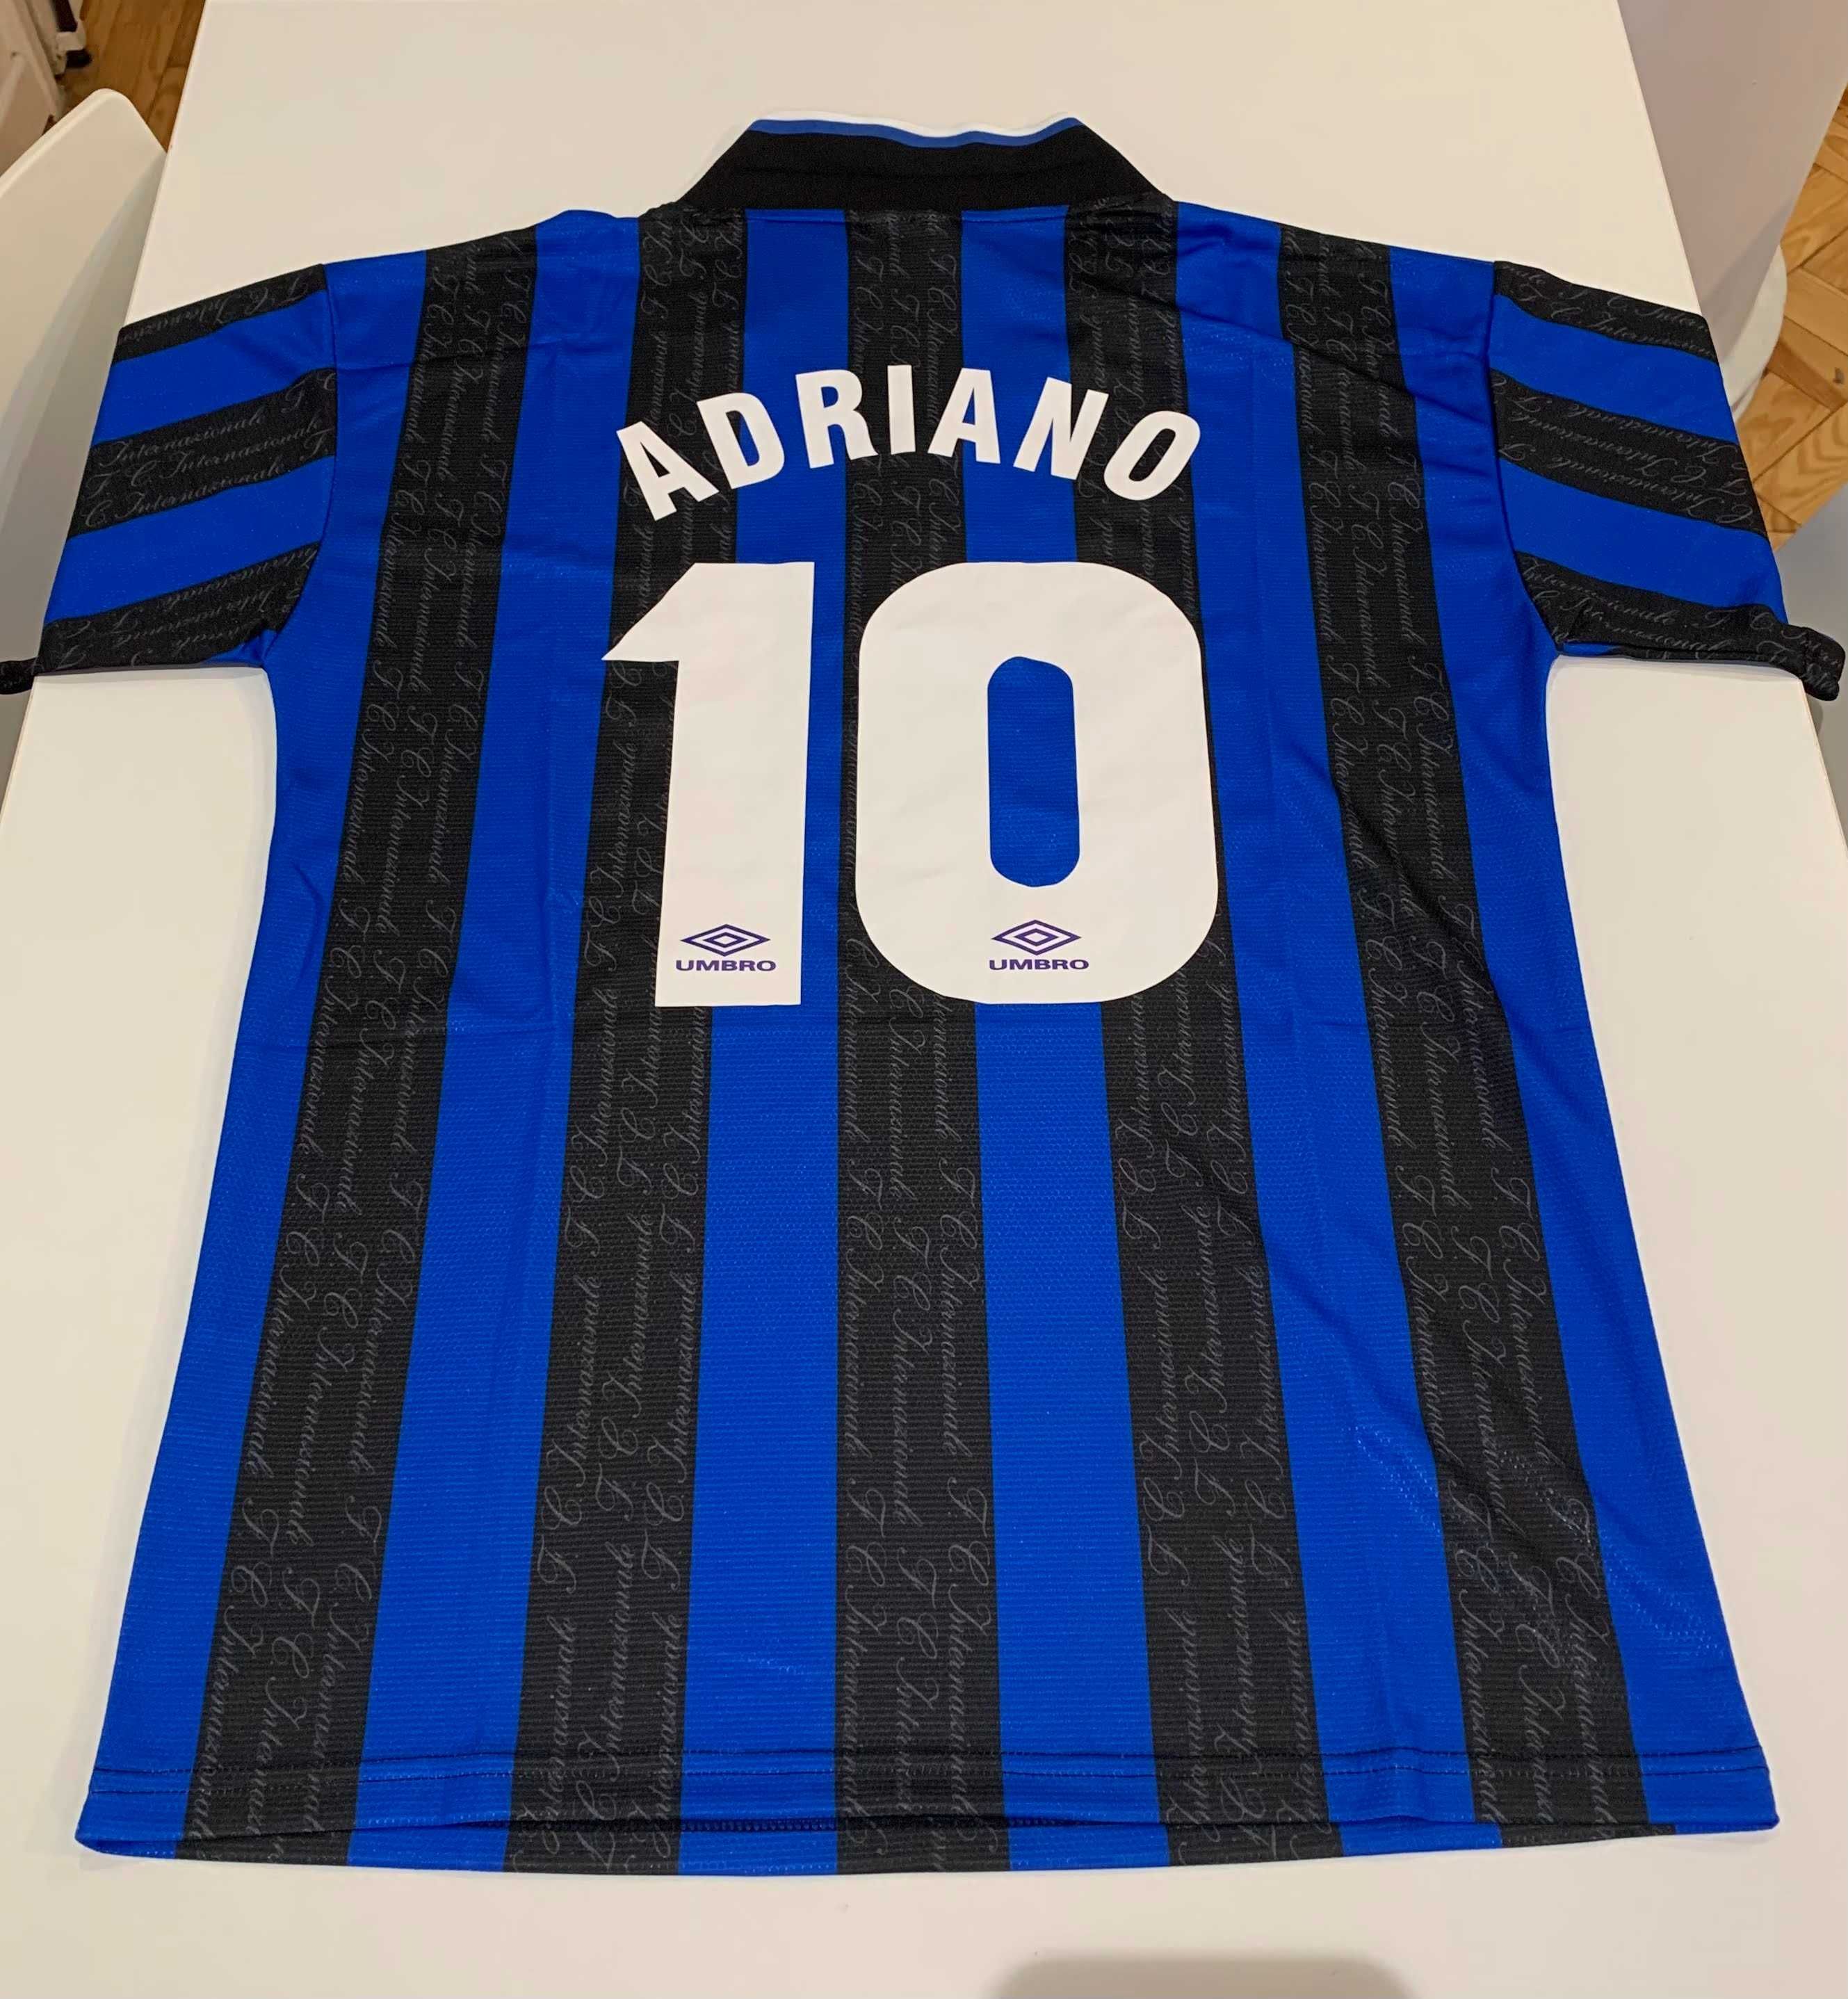 Retro Kit Inter de Milão "Adriano 10"